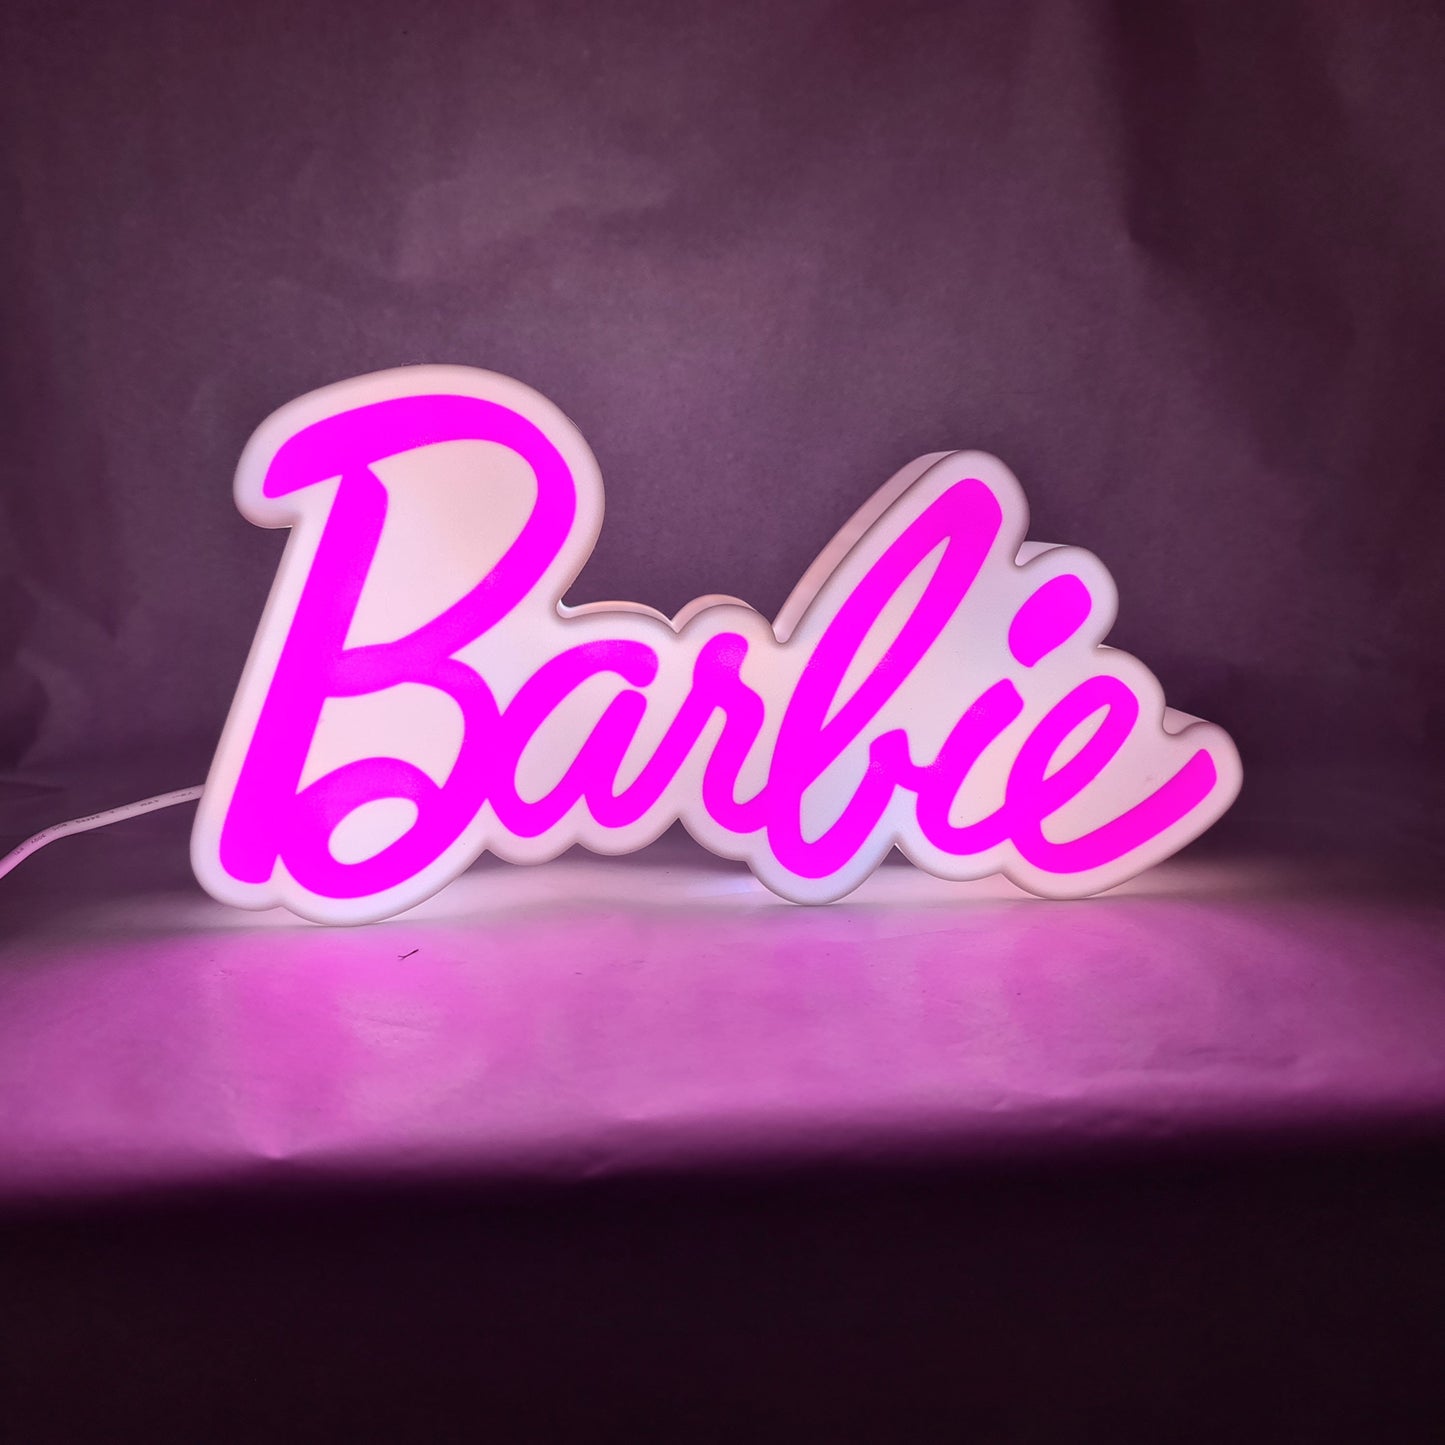 Barbie Logo LED Light Box - LED - Bedroom - Night Light - Boys/Girls mood lighting - USB